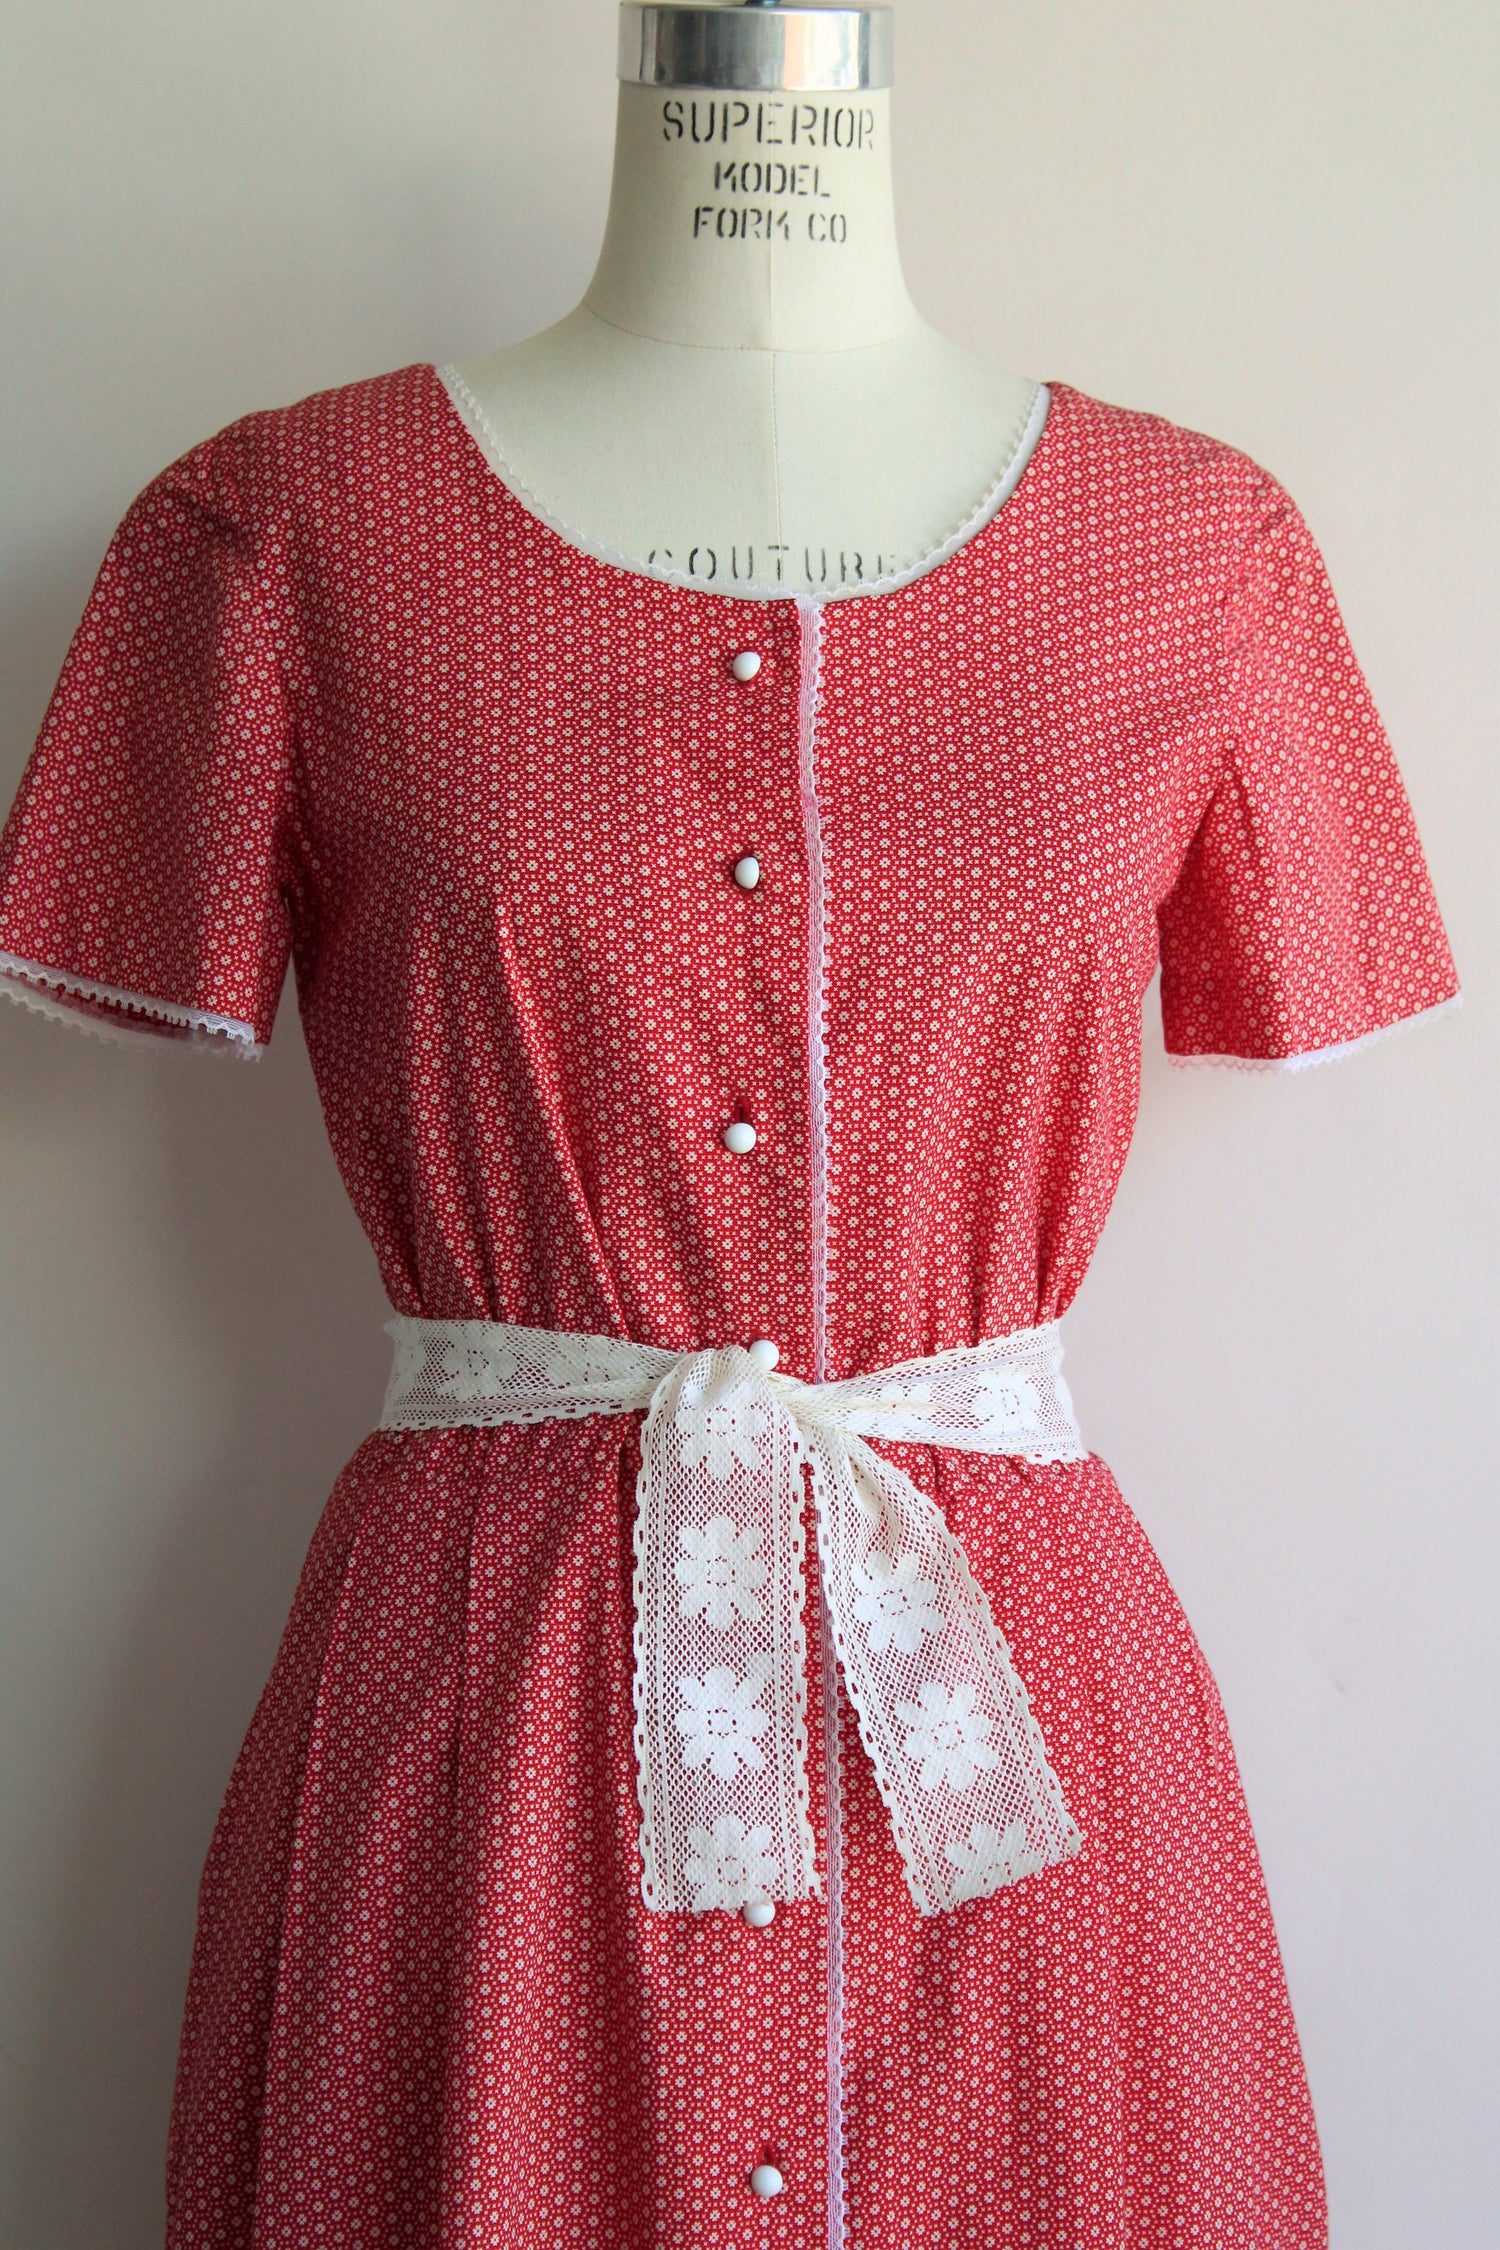 Vintage 1950s Red Calico Floral Dress